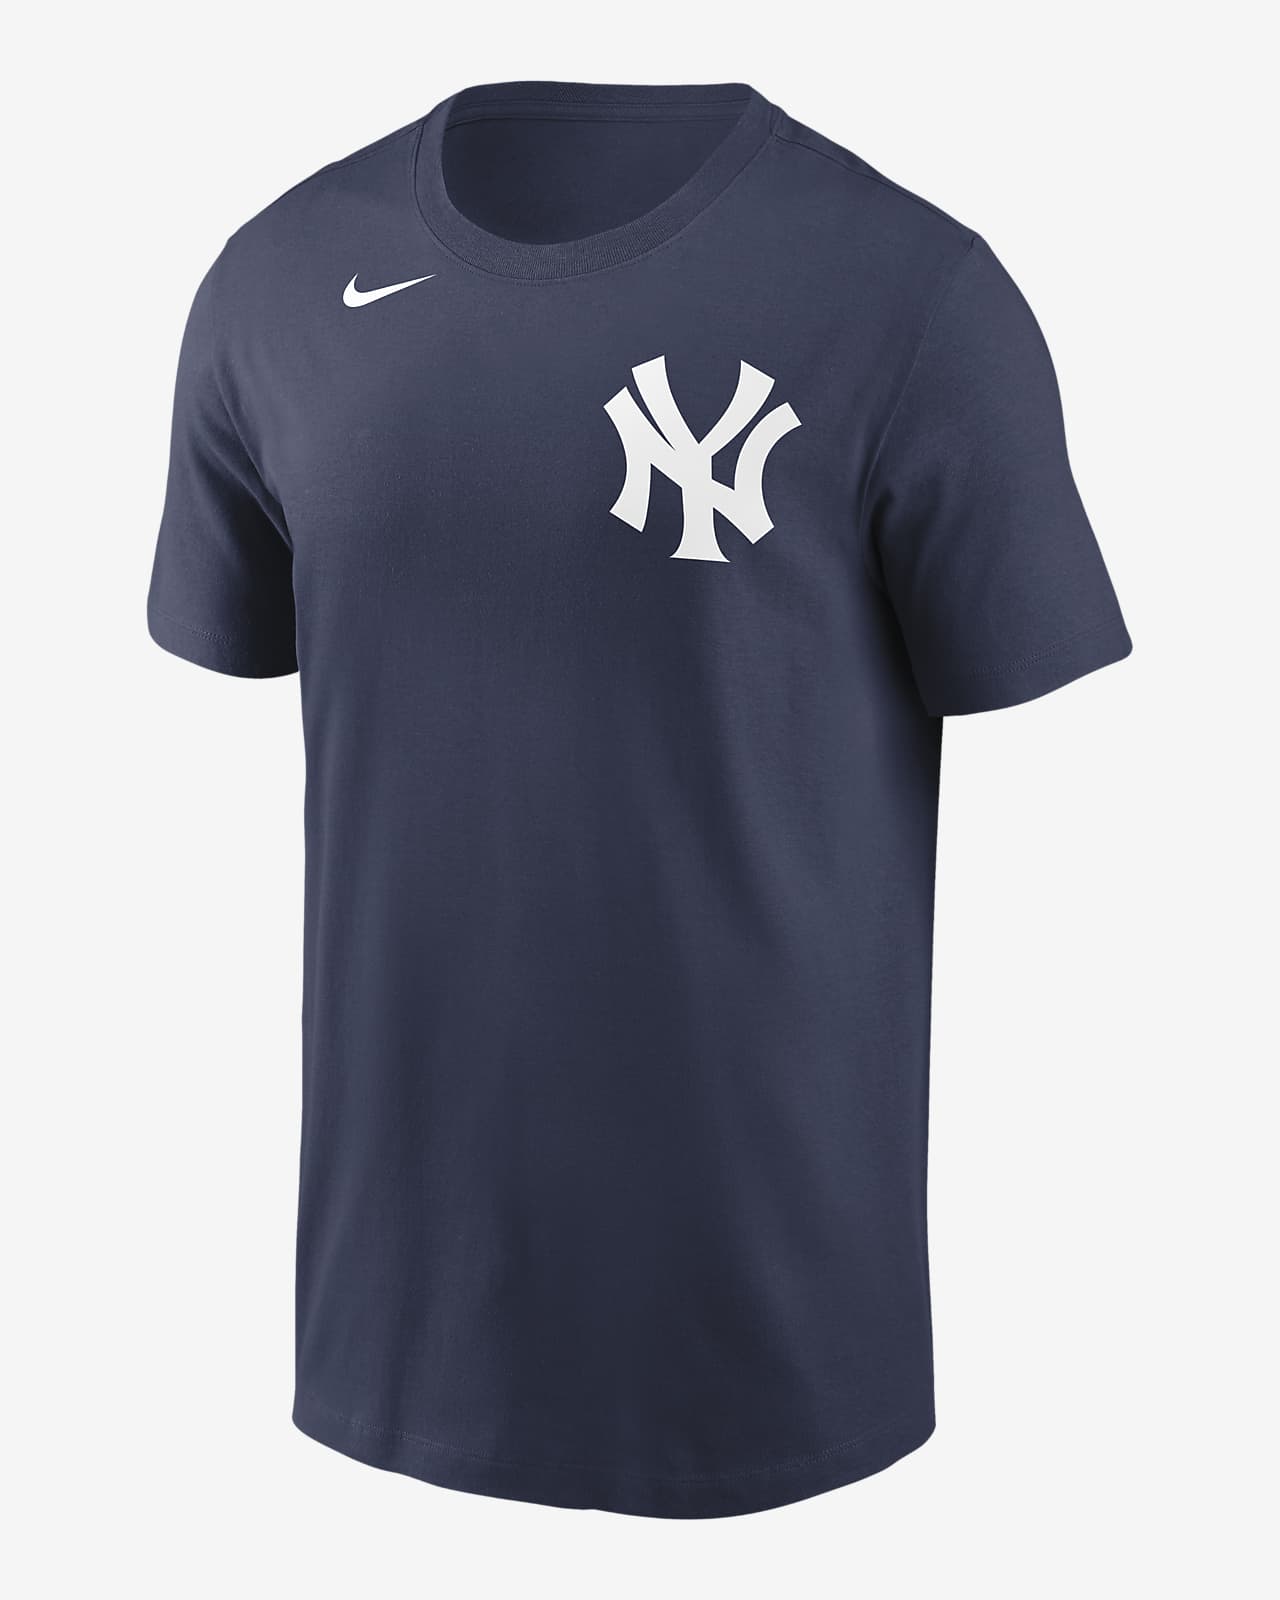 MLB New York Yankees (Luke Voit) Men's T-Shirt.